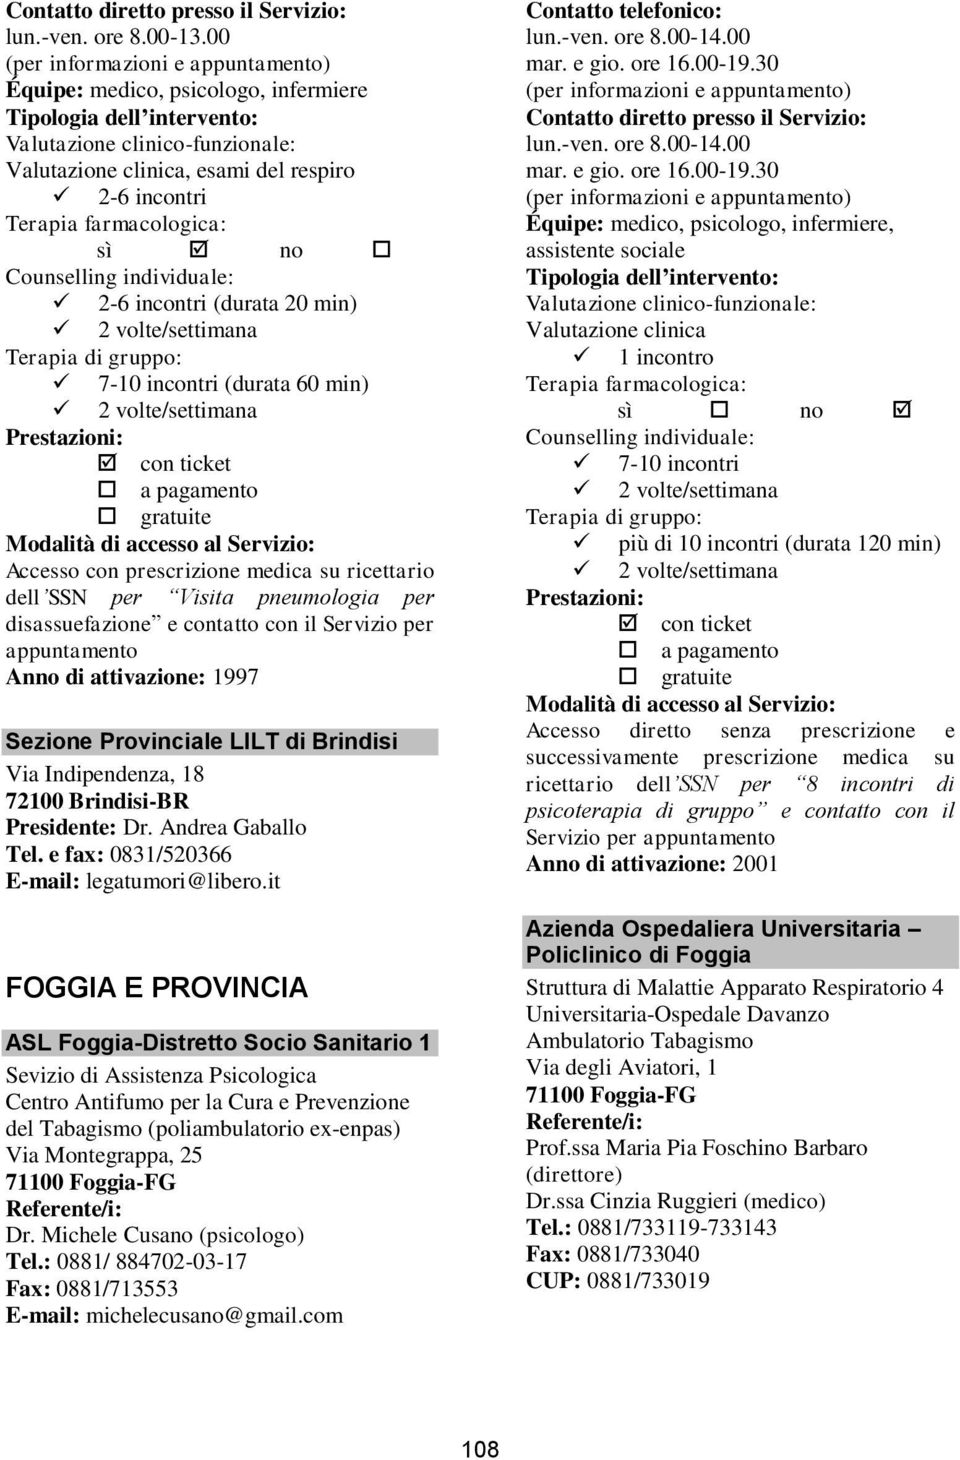 attivazione: 1997 Sezione Provinciale LILT di Brindisi Via Indipendenza, 18 72100 Brindisi-BR Presidente: Dr. Andrea Gaballo Tel. e fax: 0831/520366 E-mail: legatumori@libero.